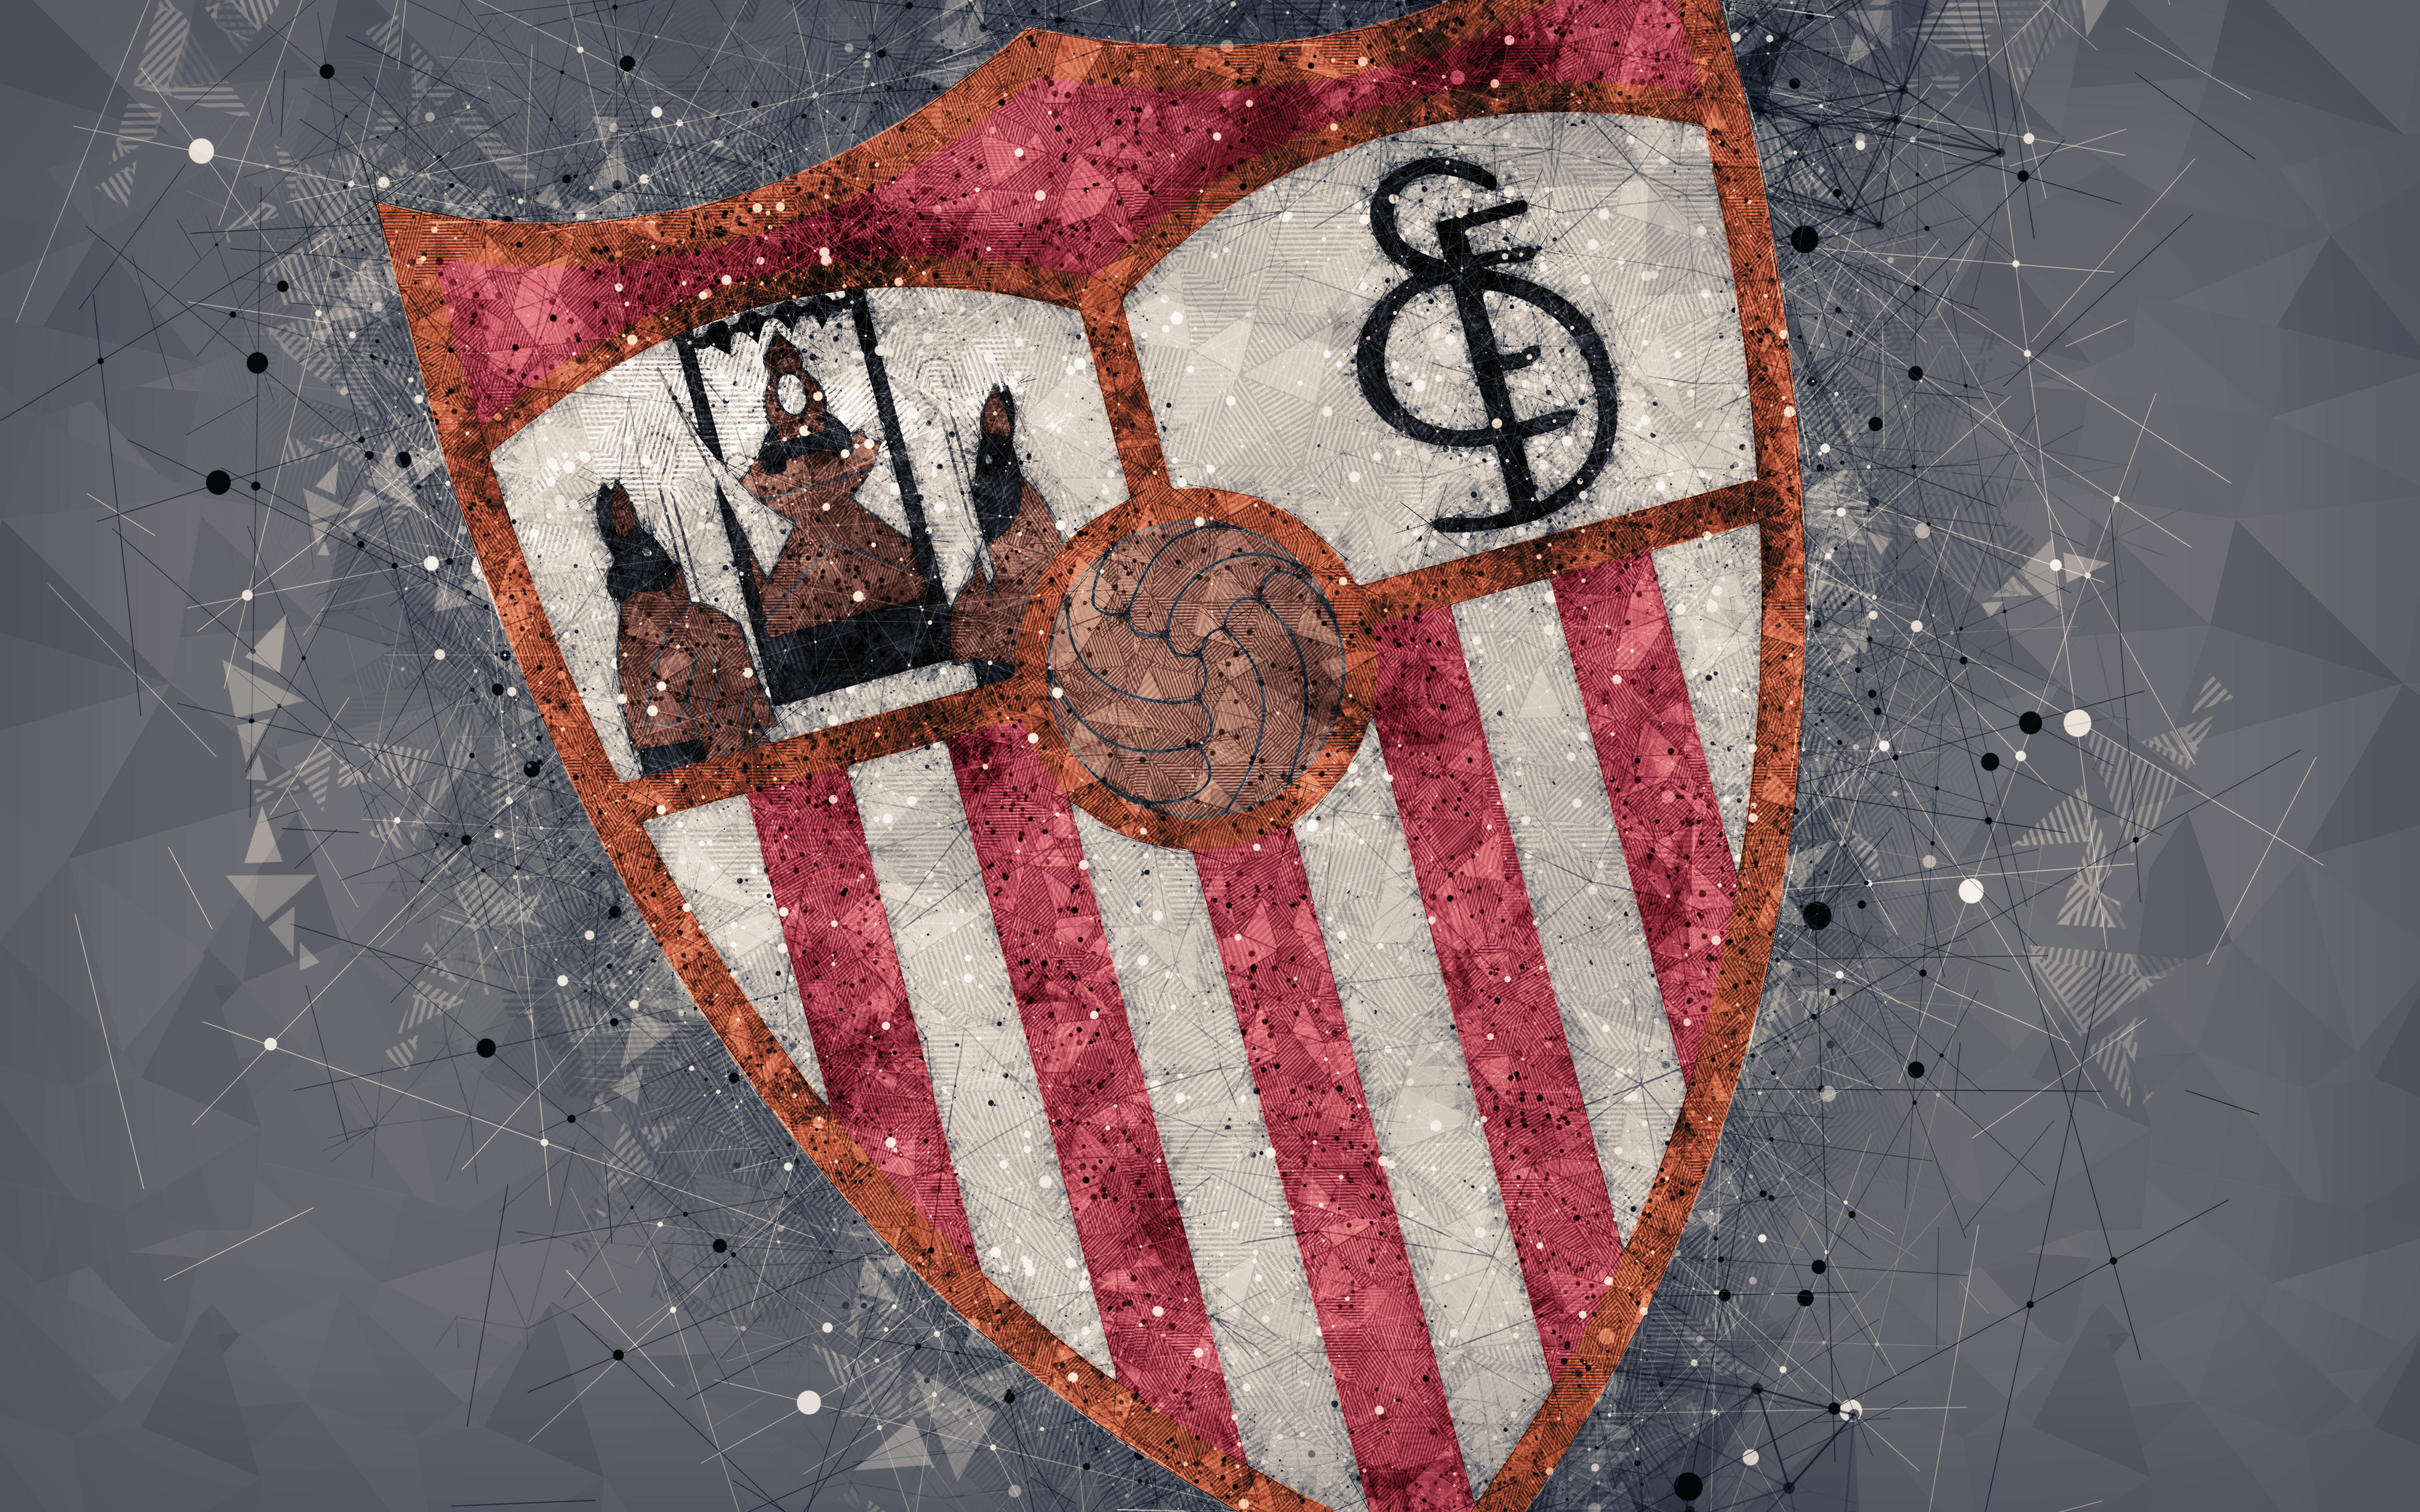 Descarga gratuita de fondo de pantalla para móvil de Fútbol, Logo, Emblema, Deporte, Sevilla Fc.